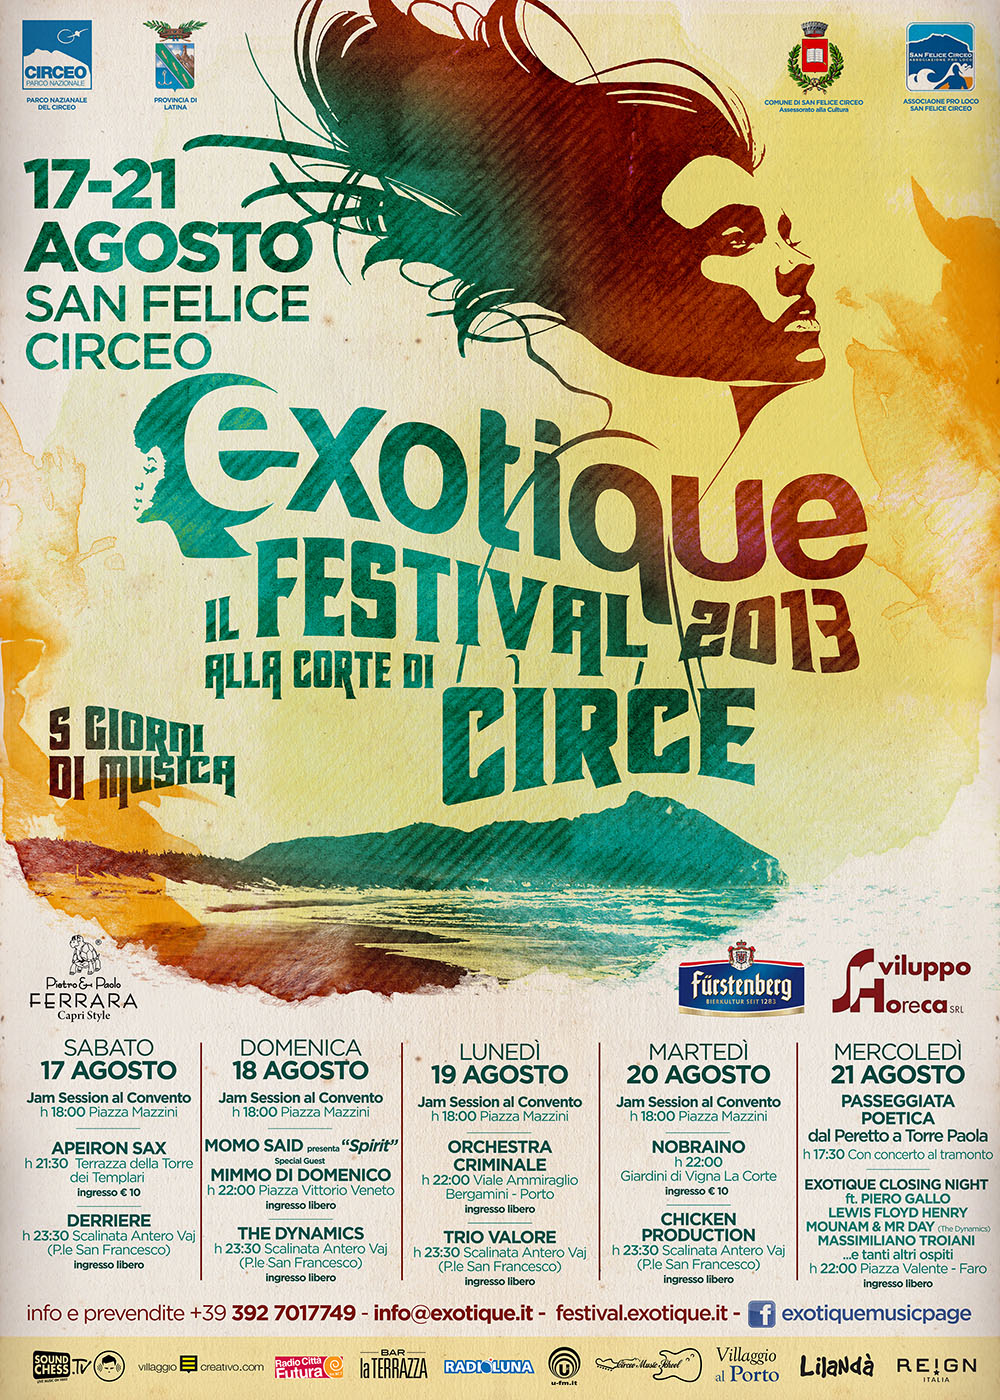 Exotique 2013 – il Festival alla Corte di Circe – S.F.Circeo 17-21 Agosto